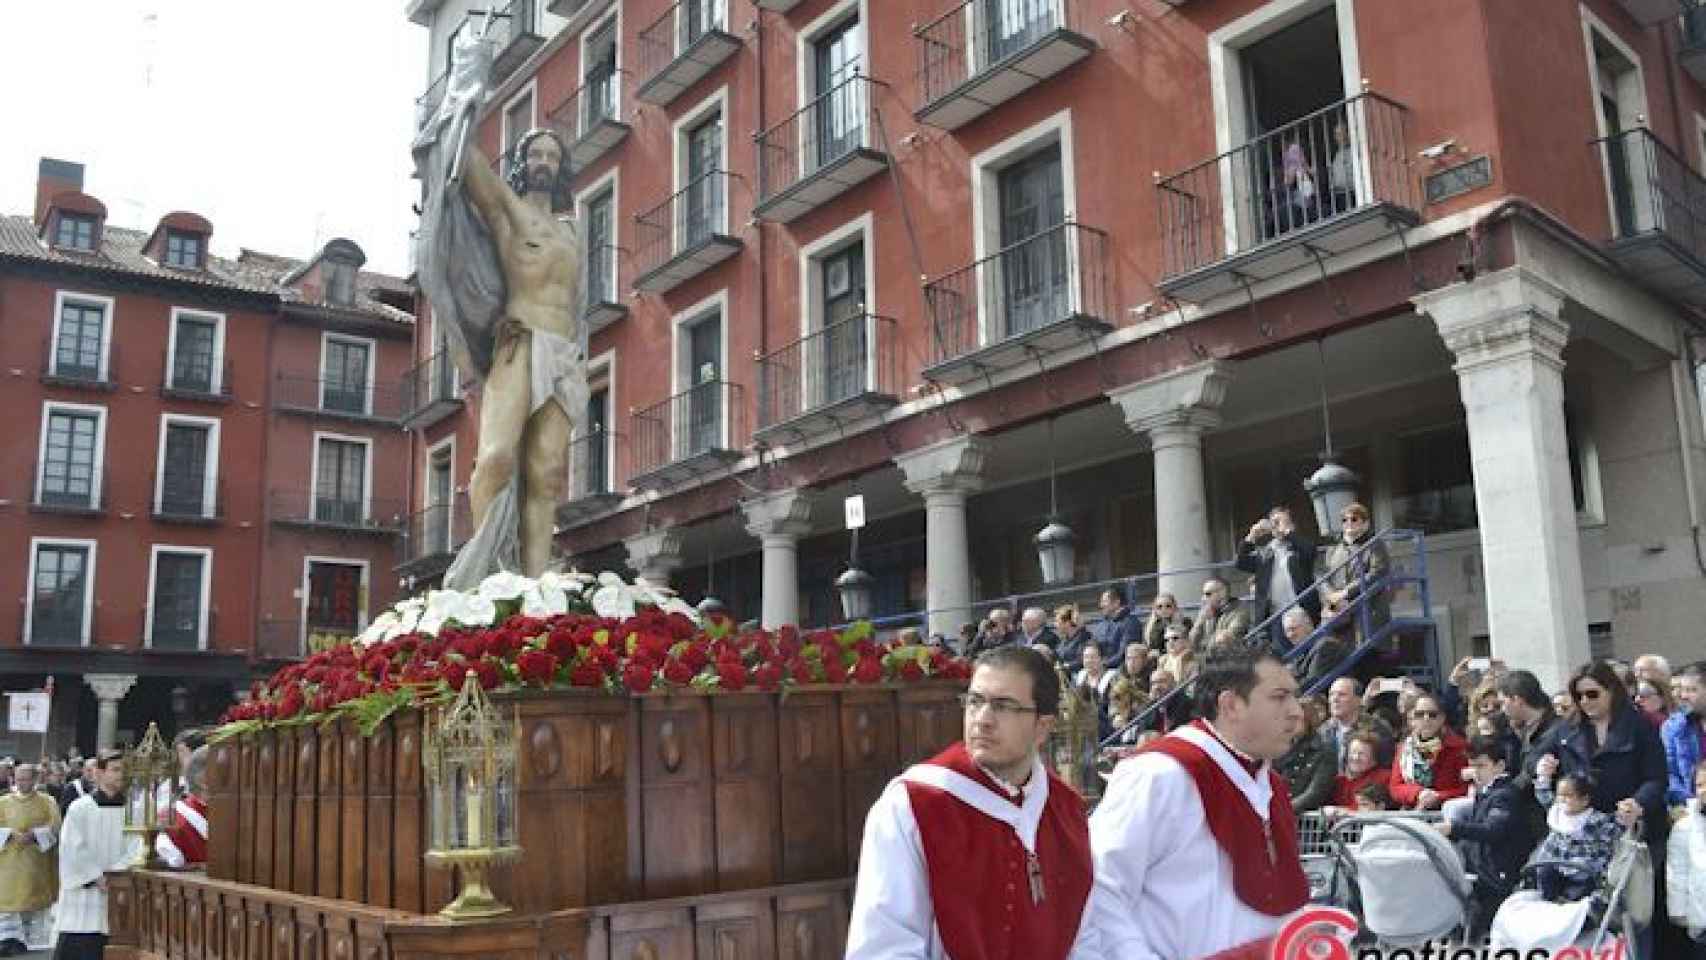 Semana Santa en Valladolid